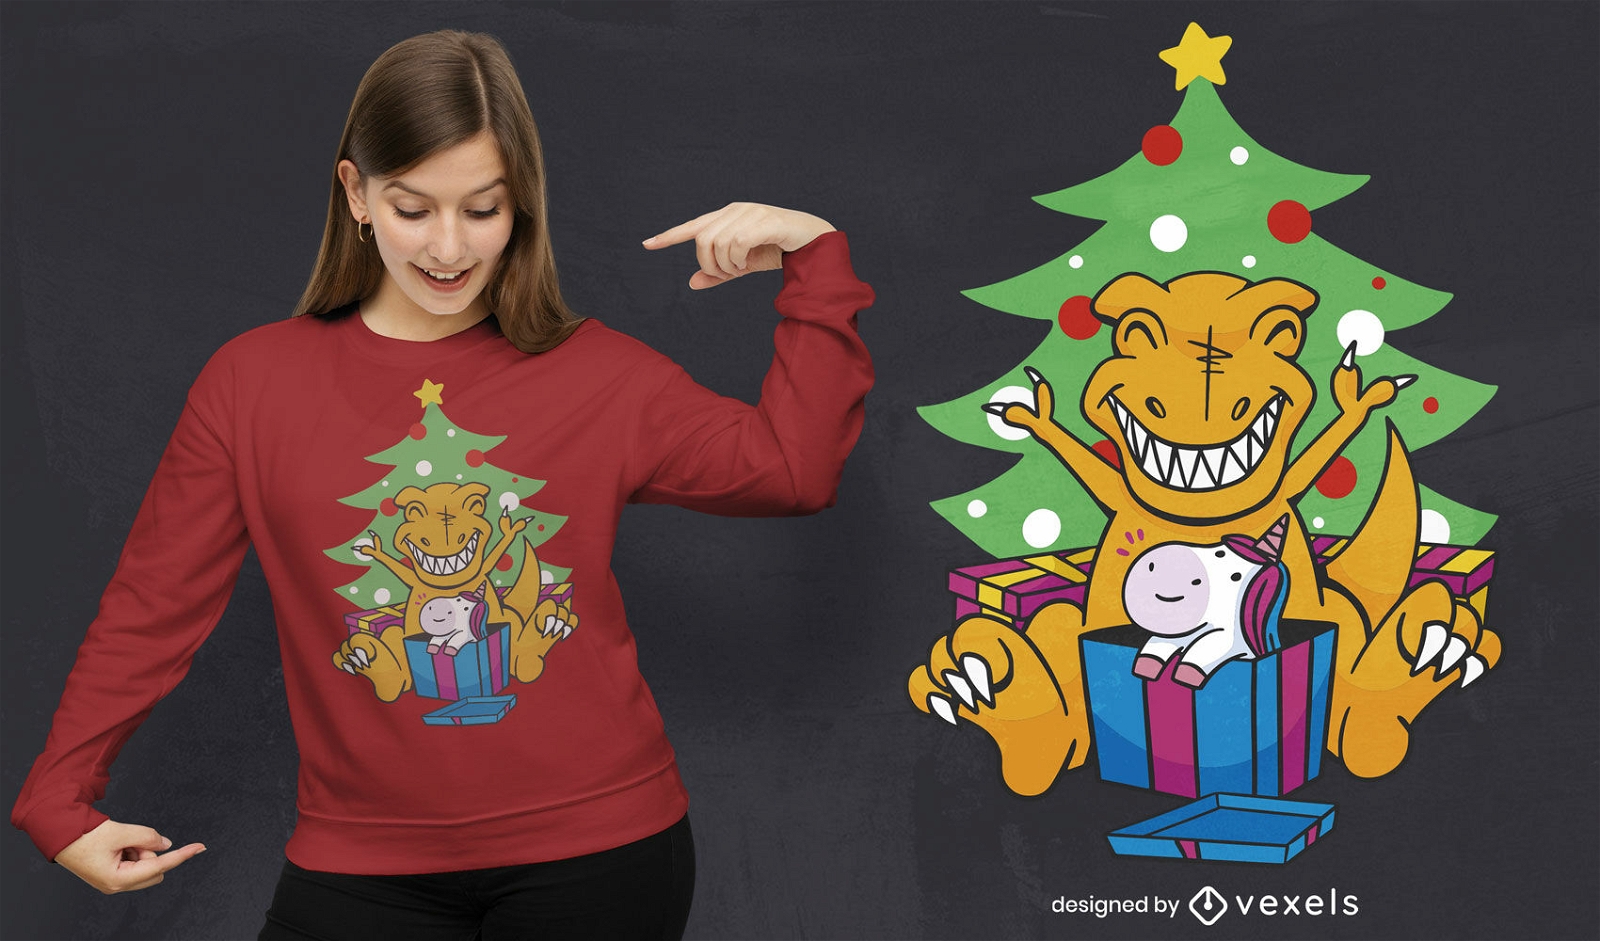 Dise?o de camiseta navide?a de dinosaurio y unicornio.